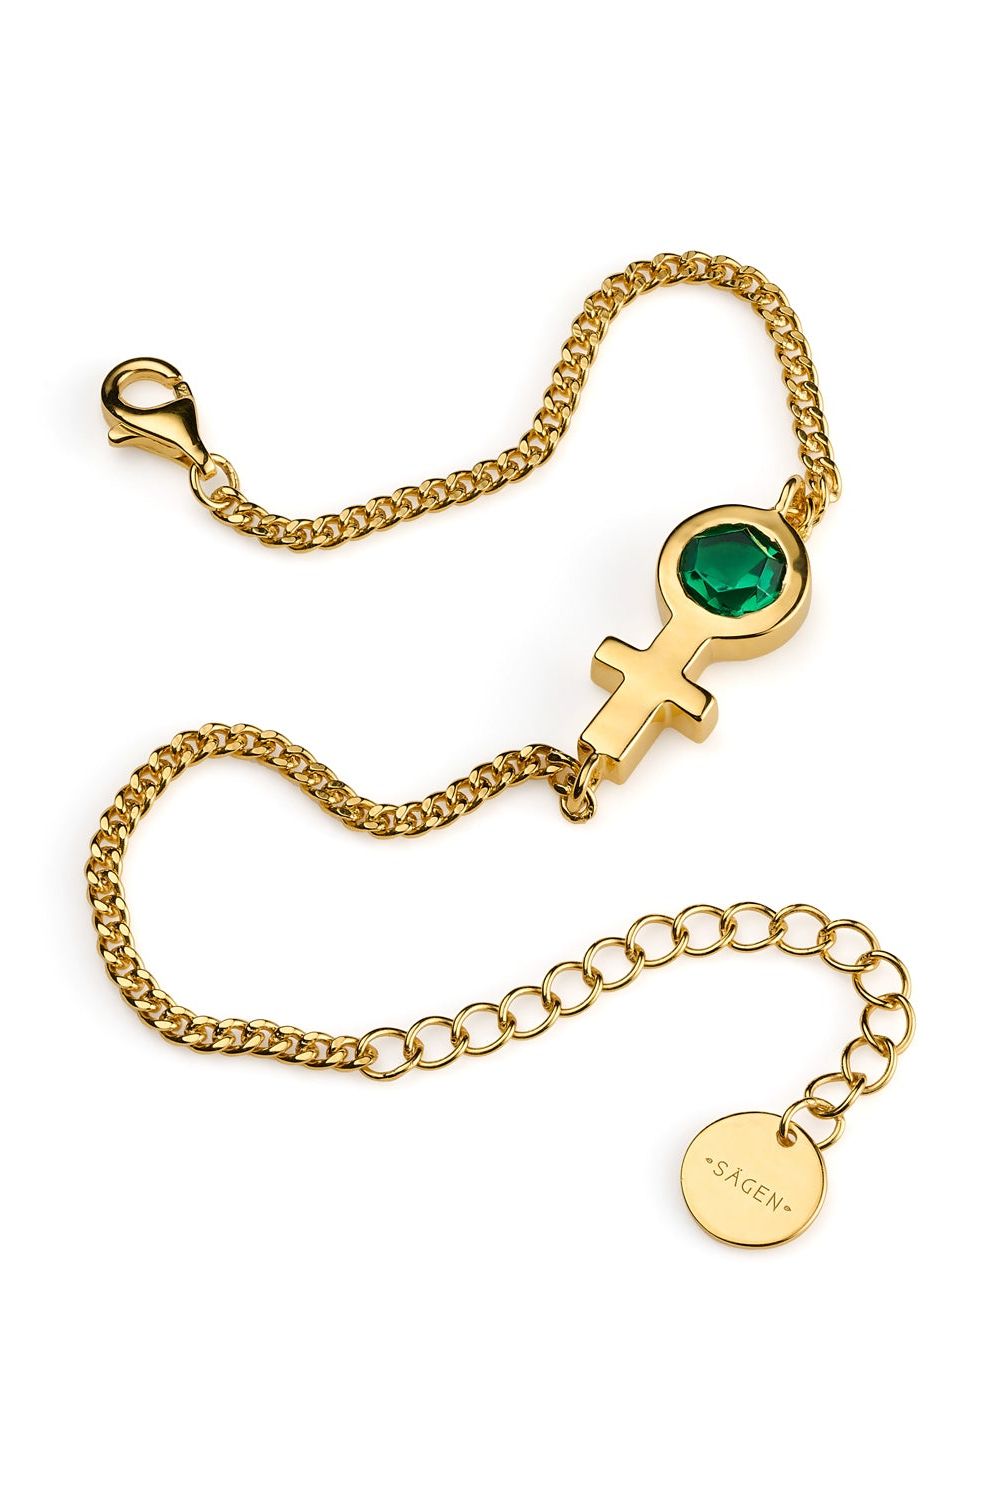 Future Is Female Golden Jade Bracelet - Scandinavian Design Jewelry - Sagen Sweden